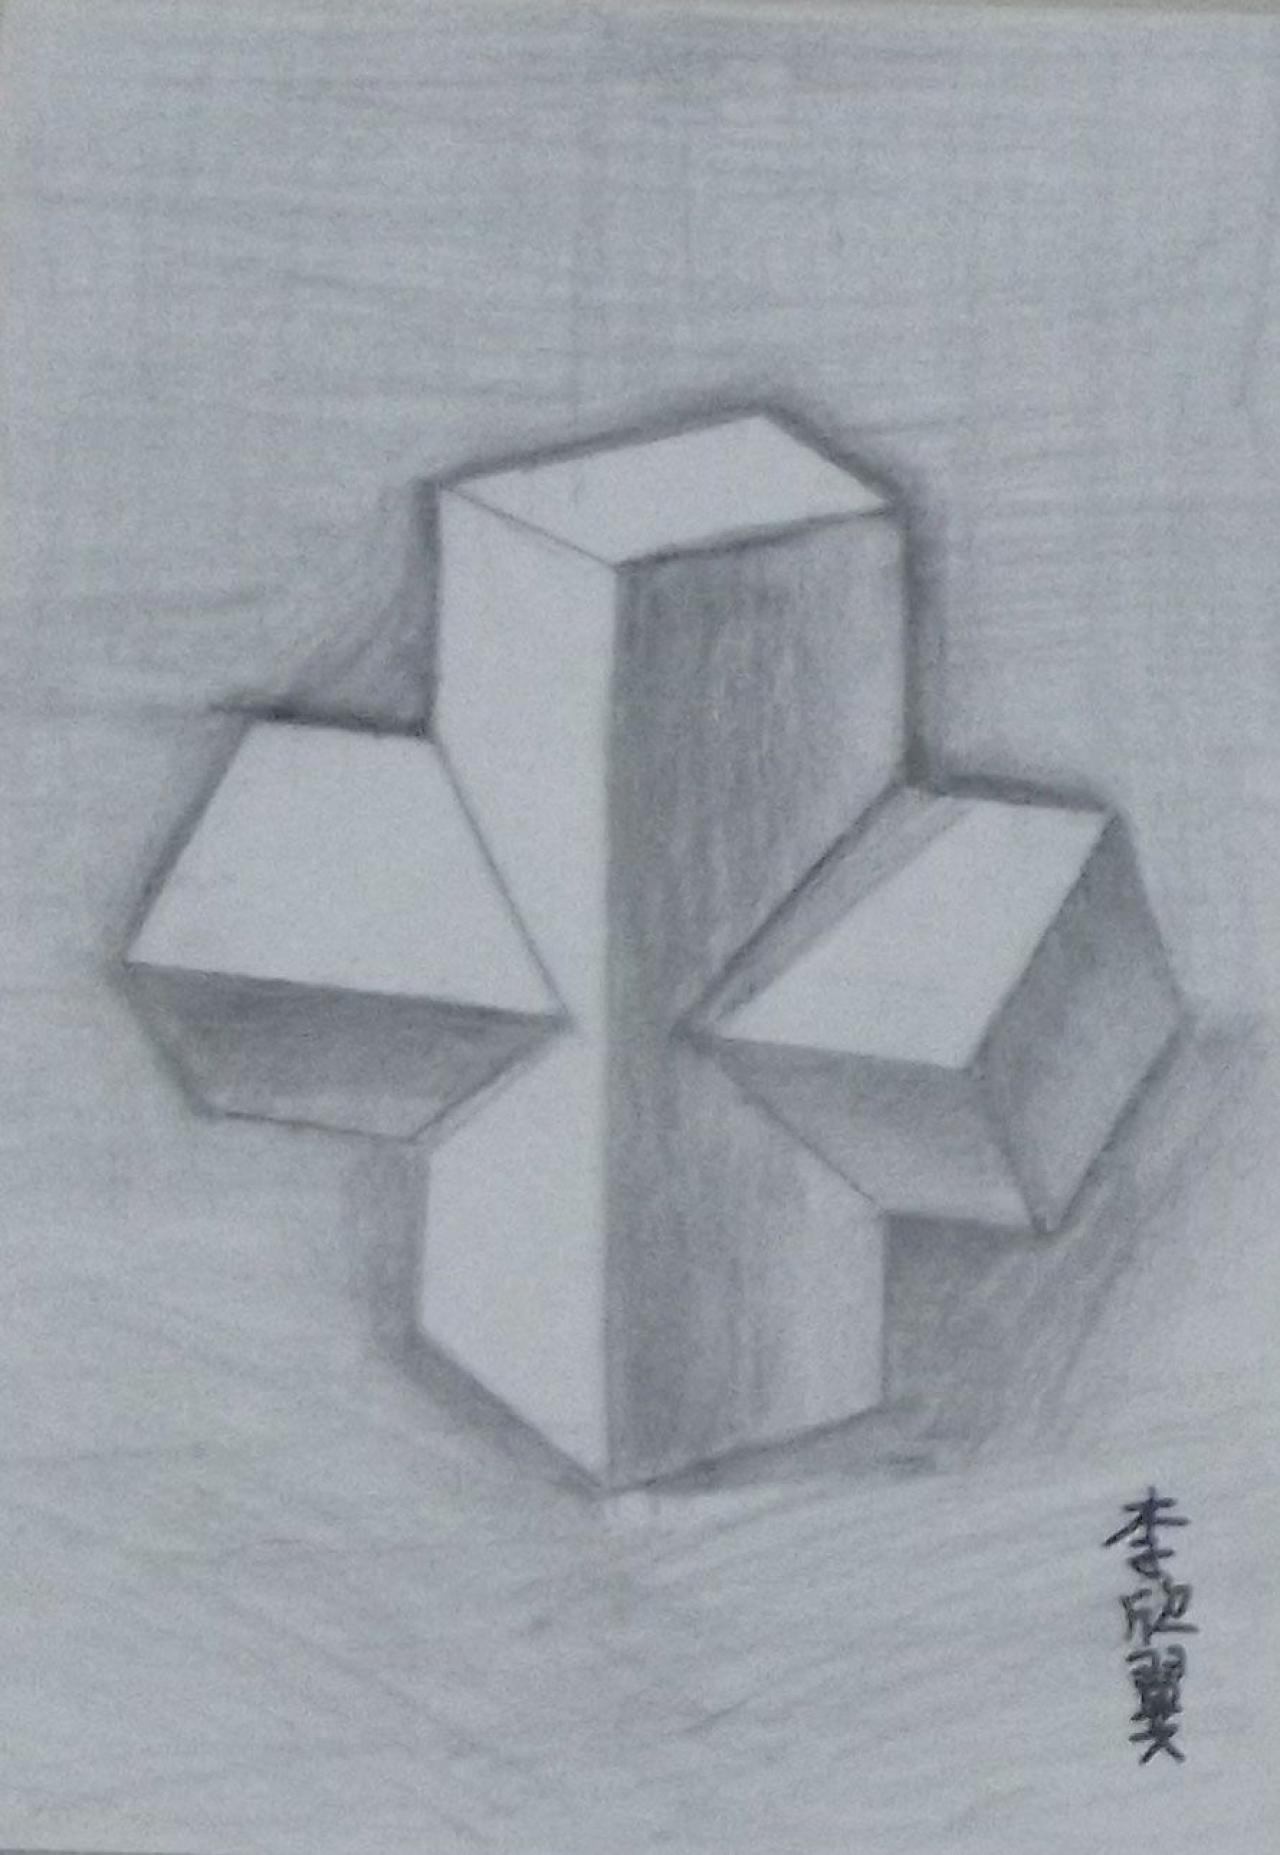 长方体组合体 石膏几何体 李欣翼画